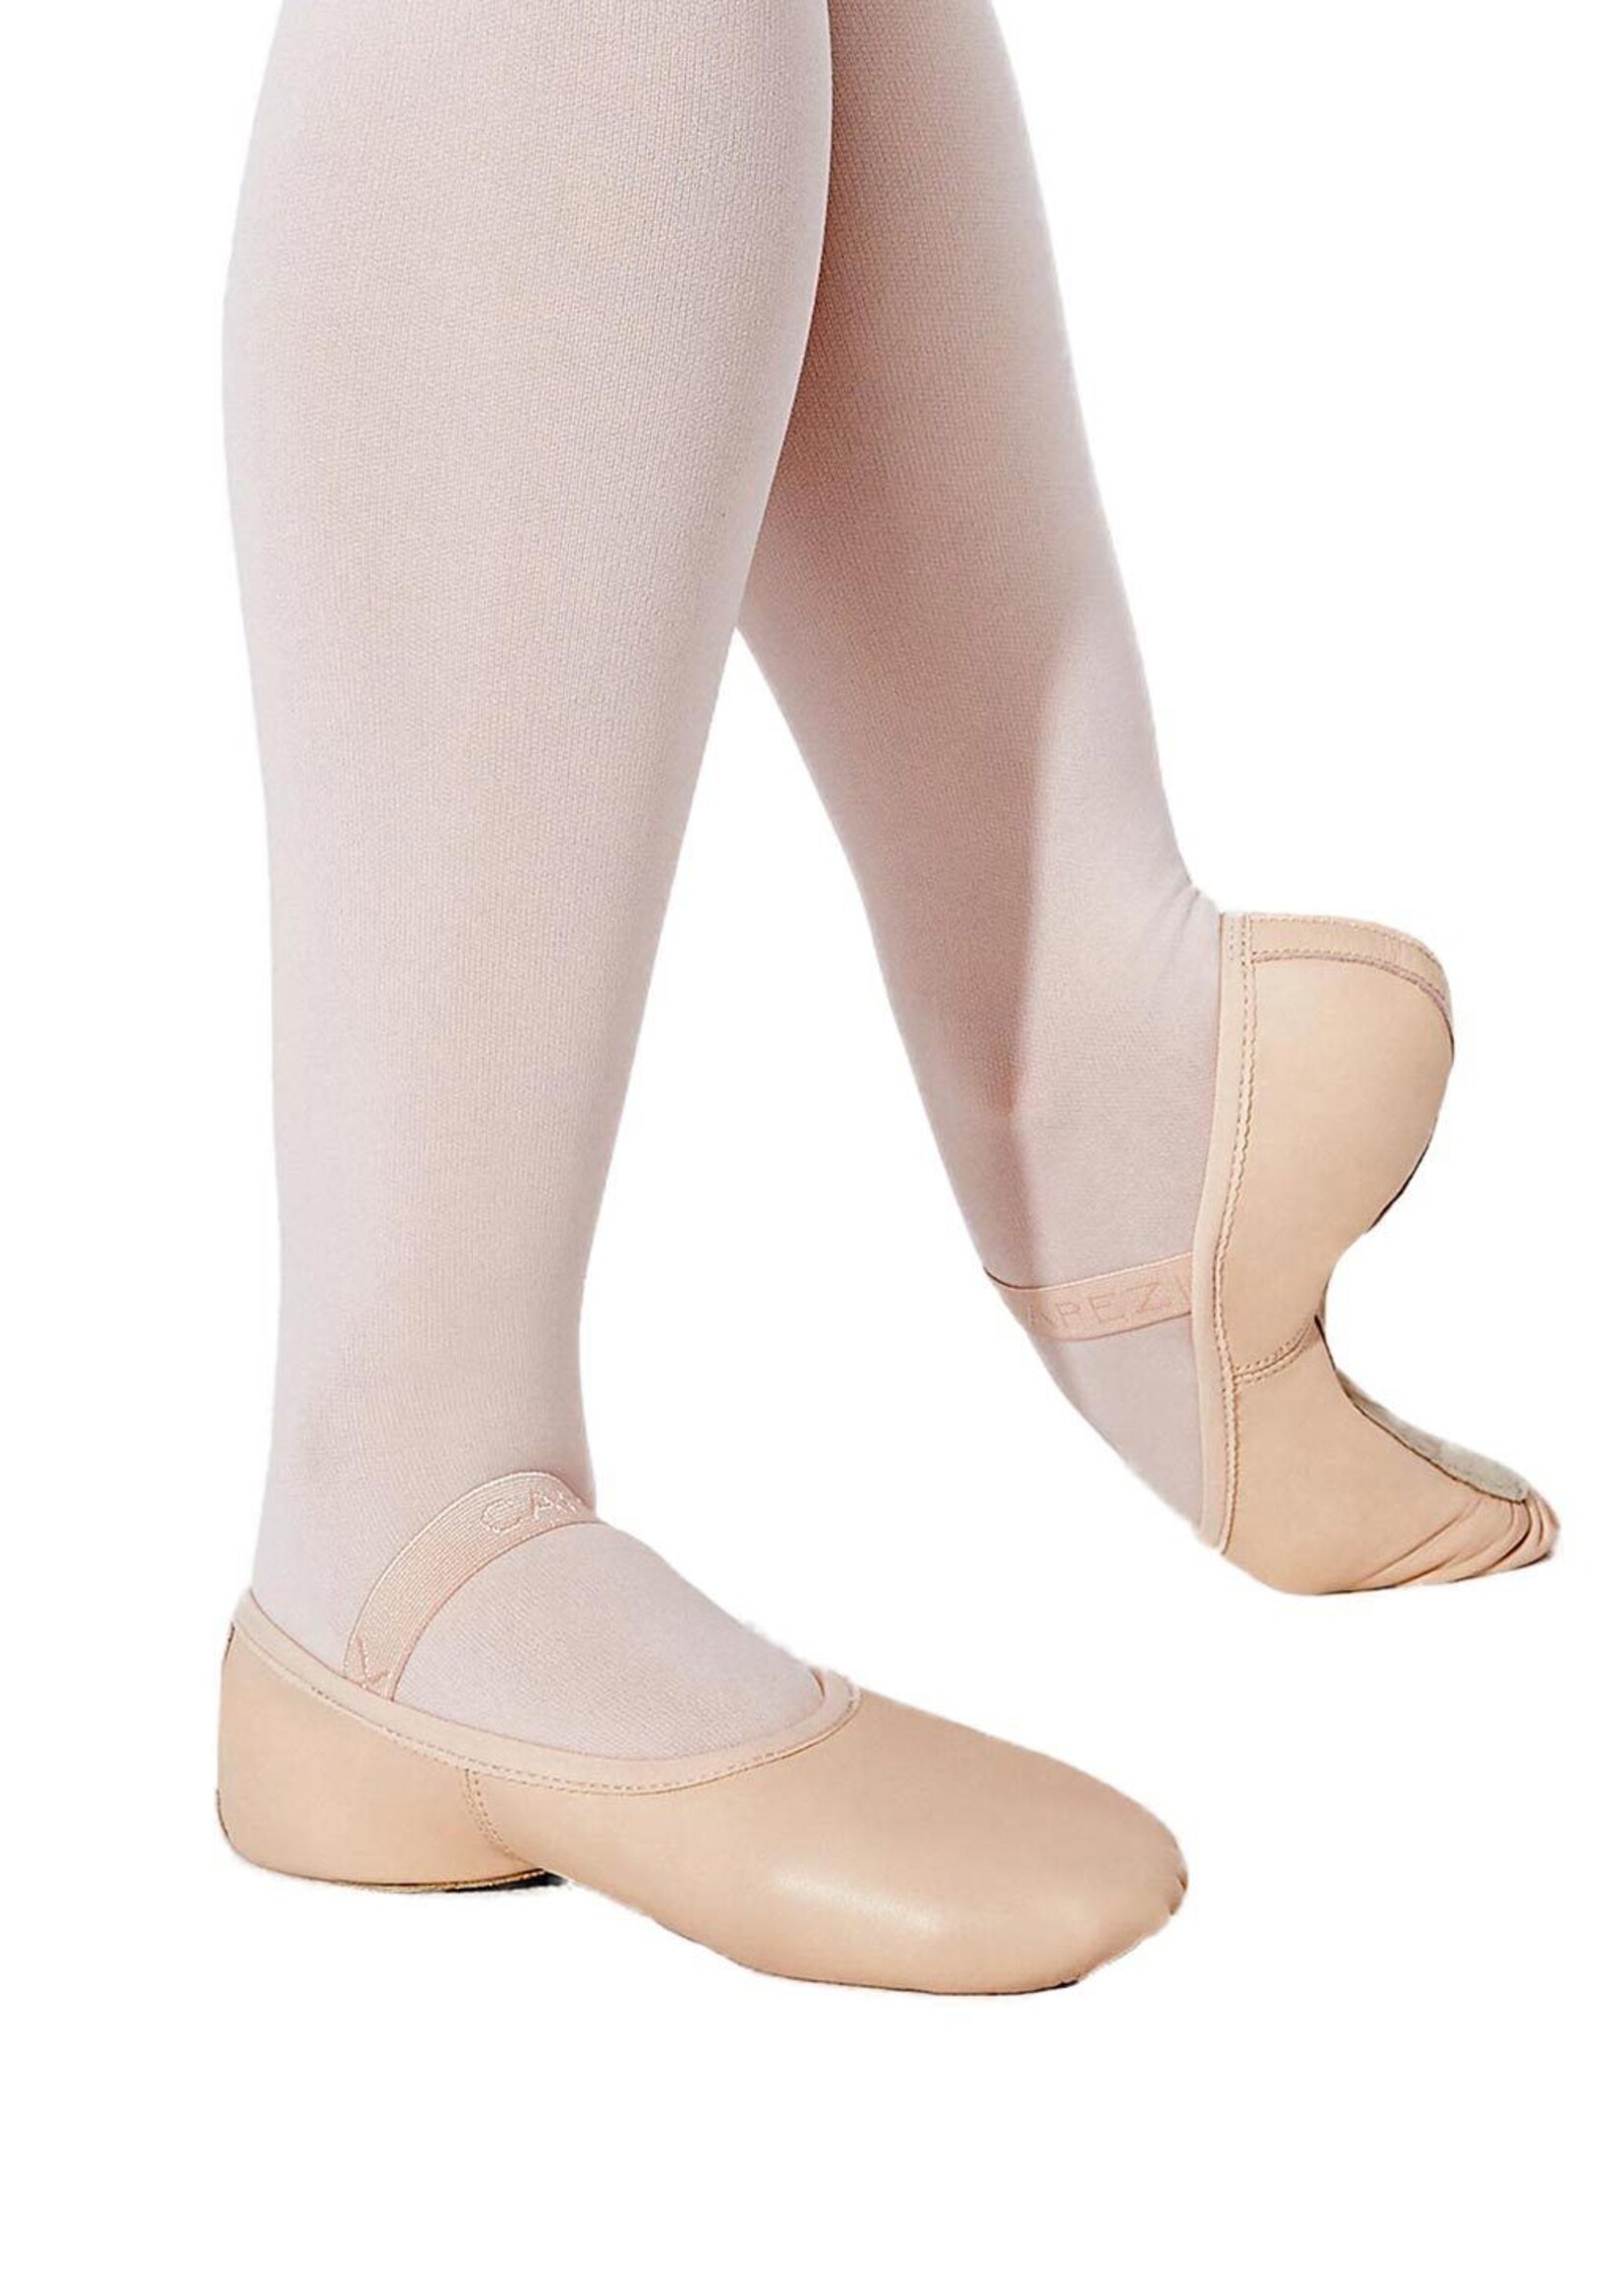 Capezio 212C Lily Child Full Sole Pink Ballet Shoe